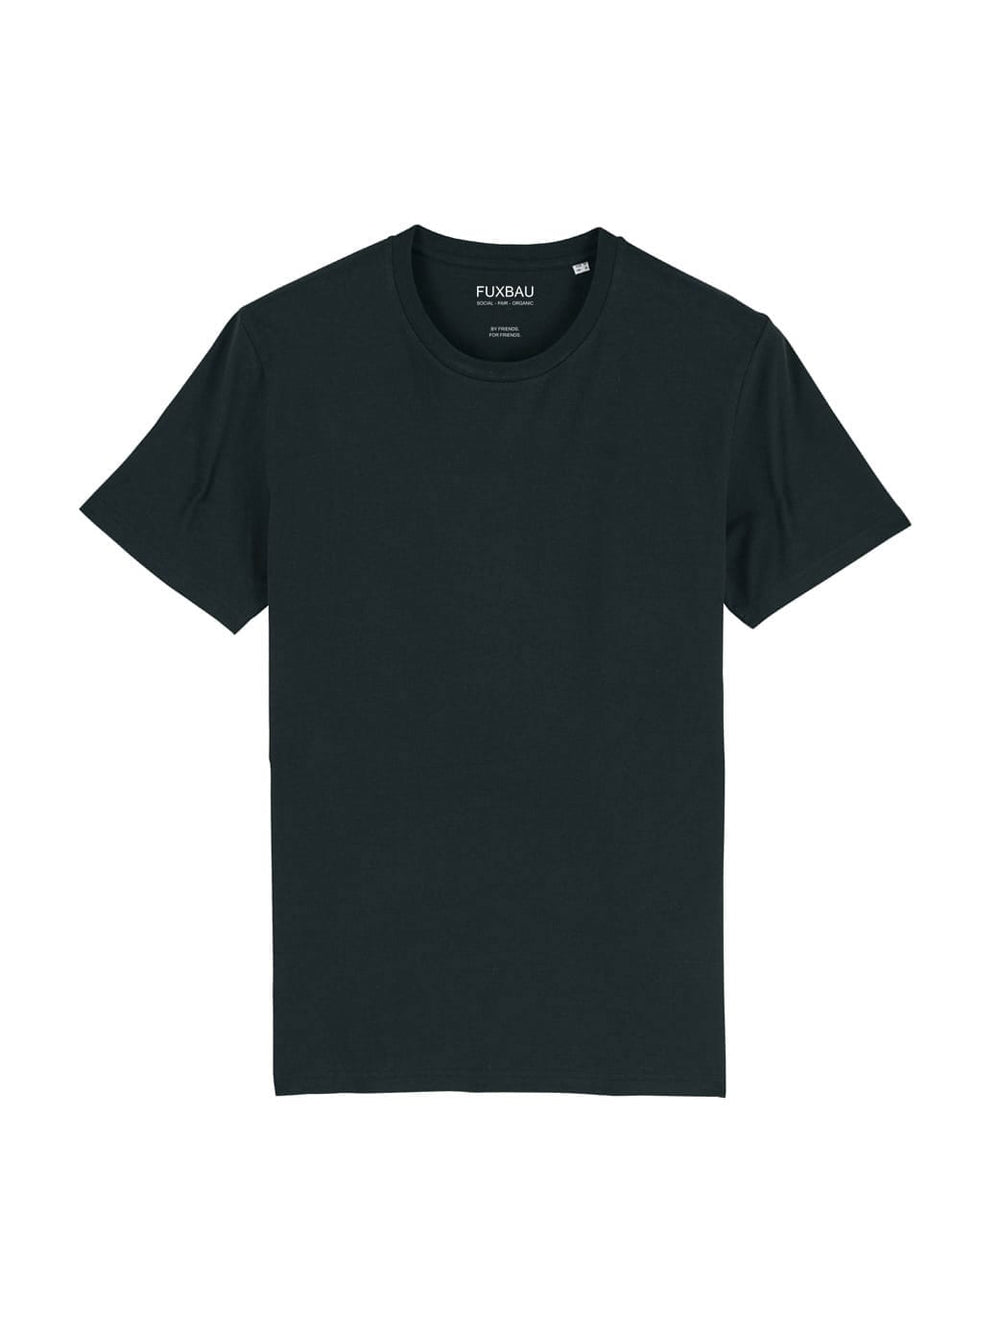 Faires und nachhaltiges schweres Basic T-Shirt von FUXBAU in schwarz aus 100% Biobaumwolle im 3er Pack.